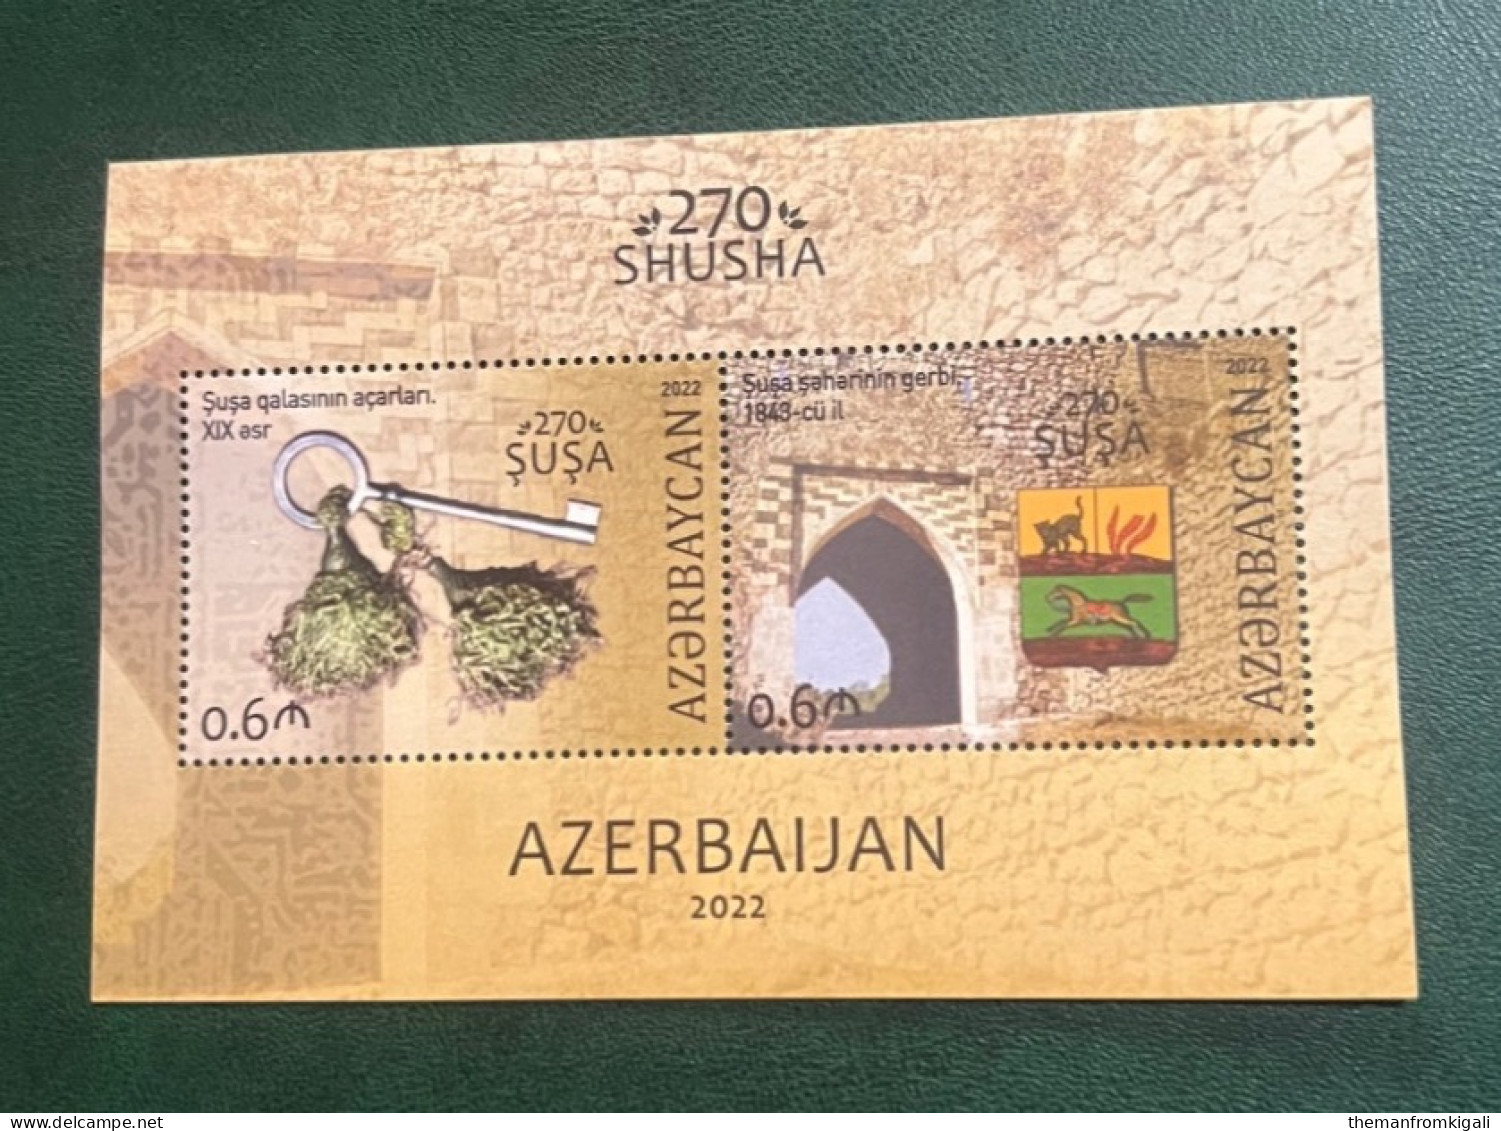 Azerbaijan 2022 - The 270th Anniversary Of Shusha. - Azerbaijan